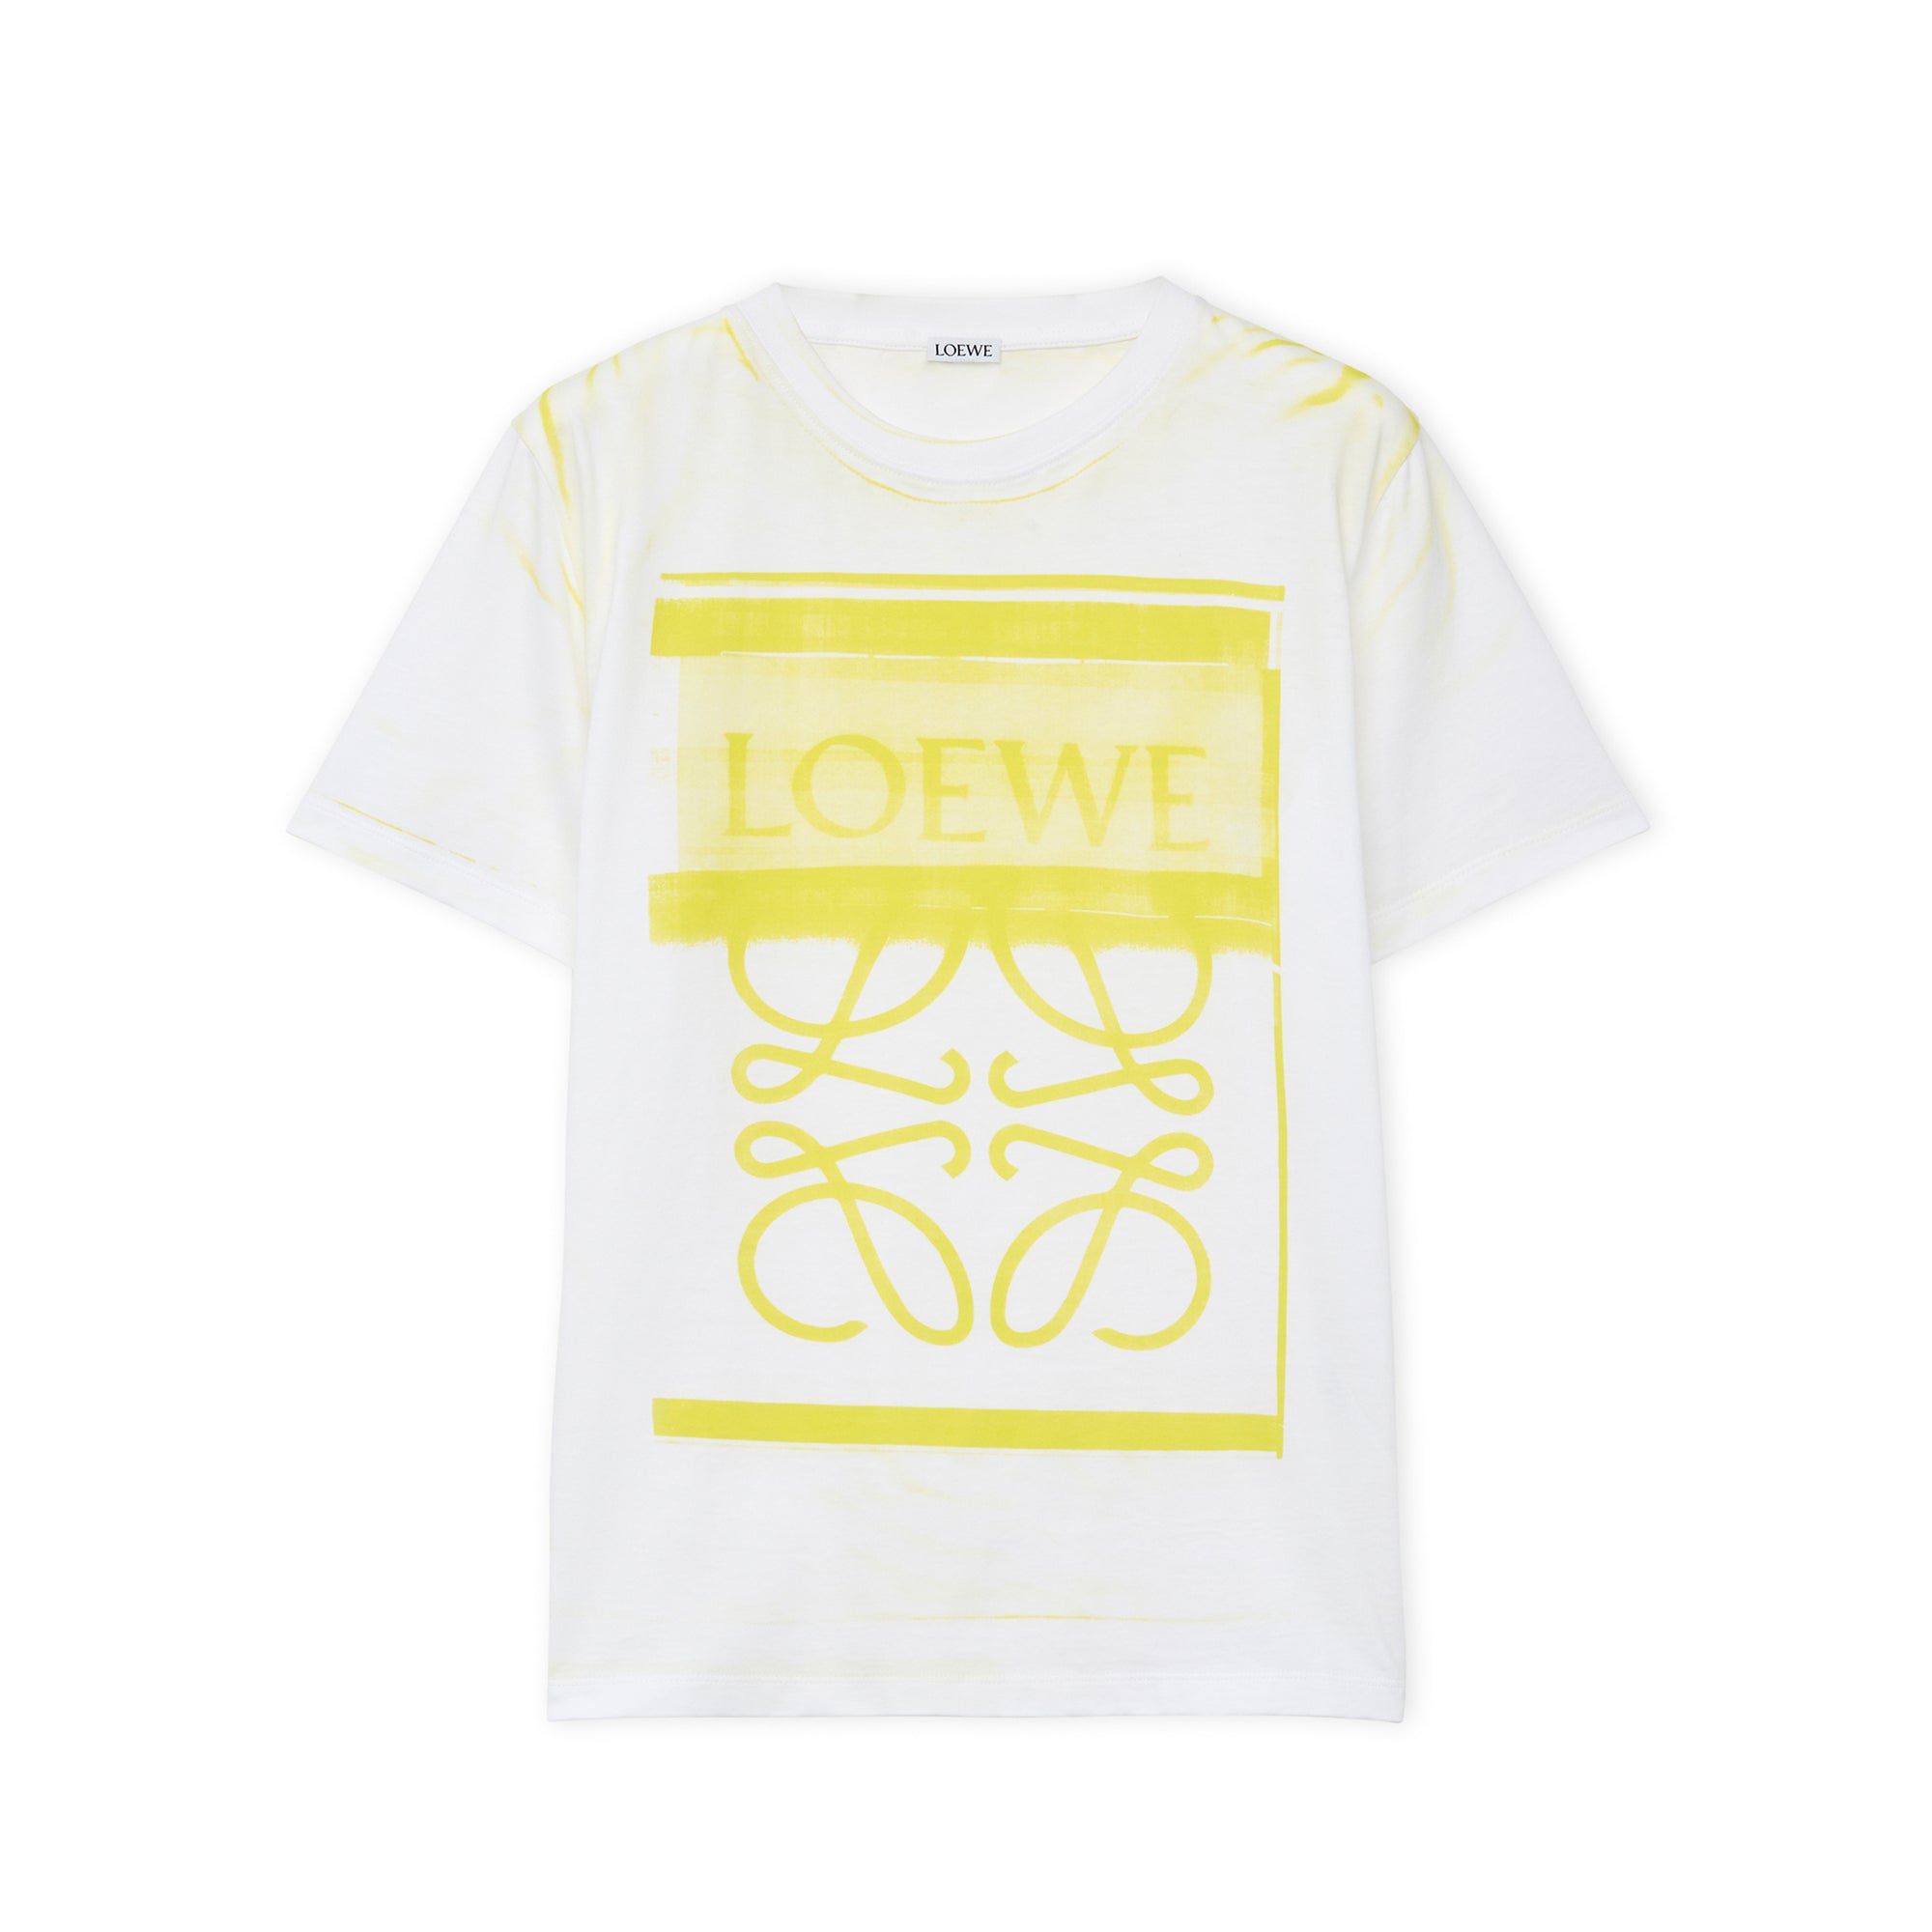 Loewe - Women’s Regular Fit T-Shirt - (White/Yellow) view 1